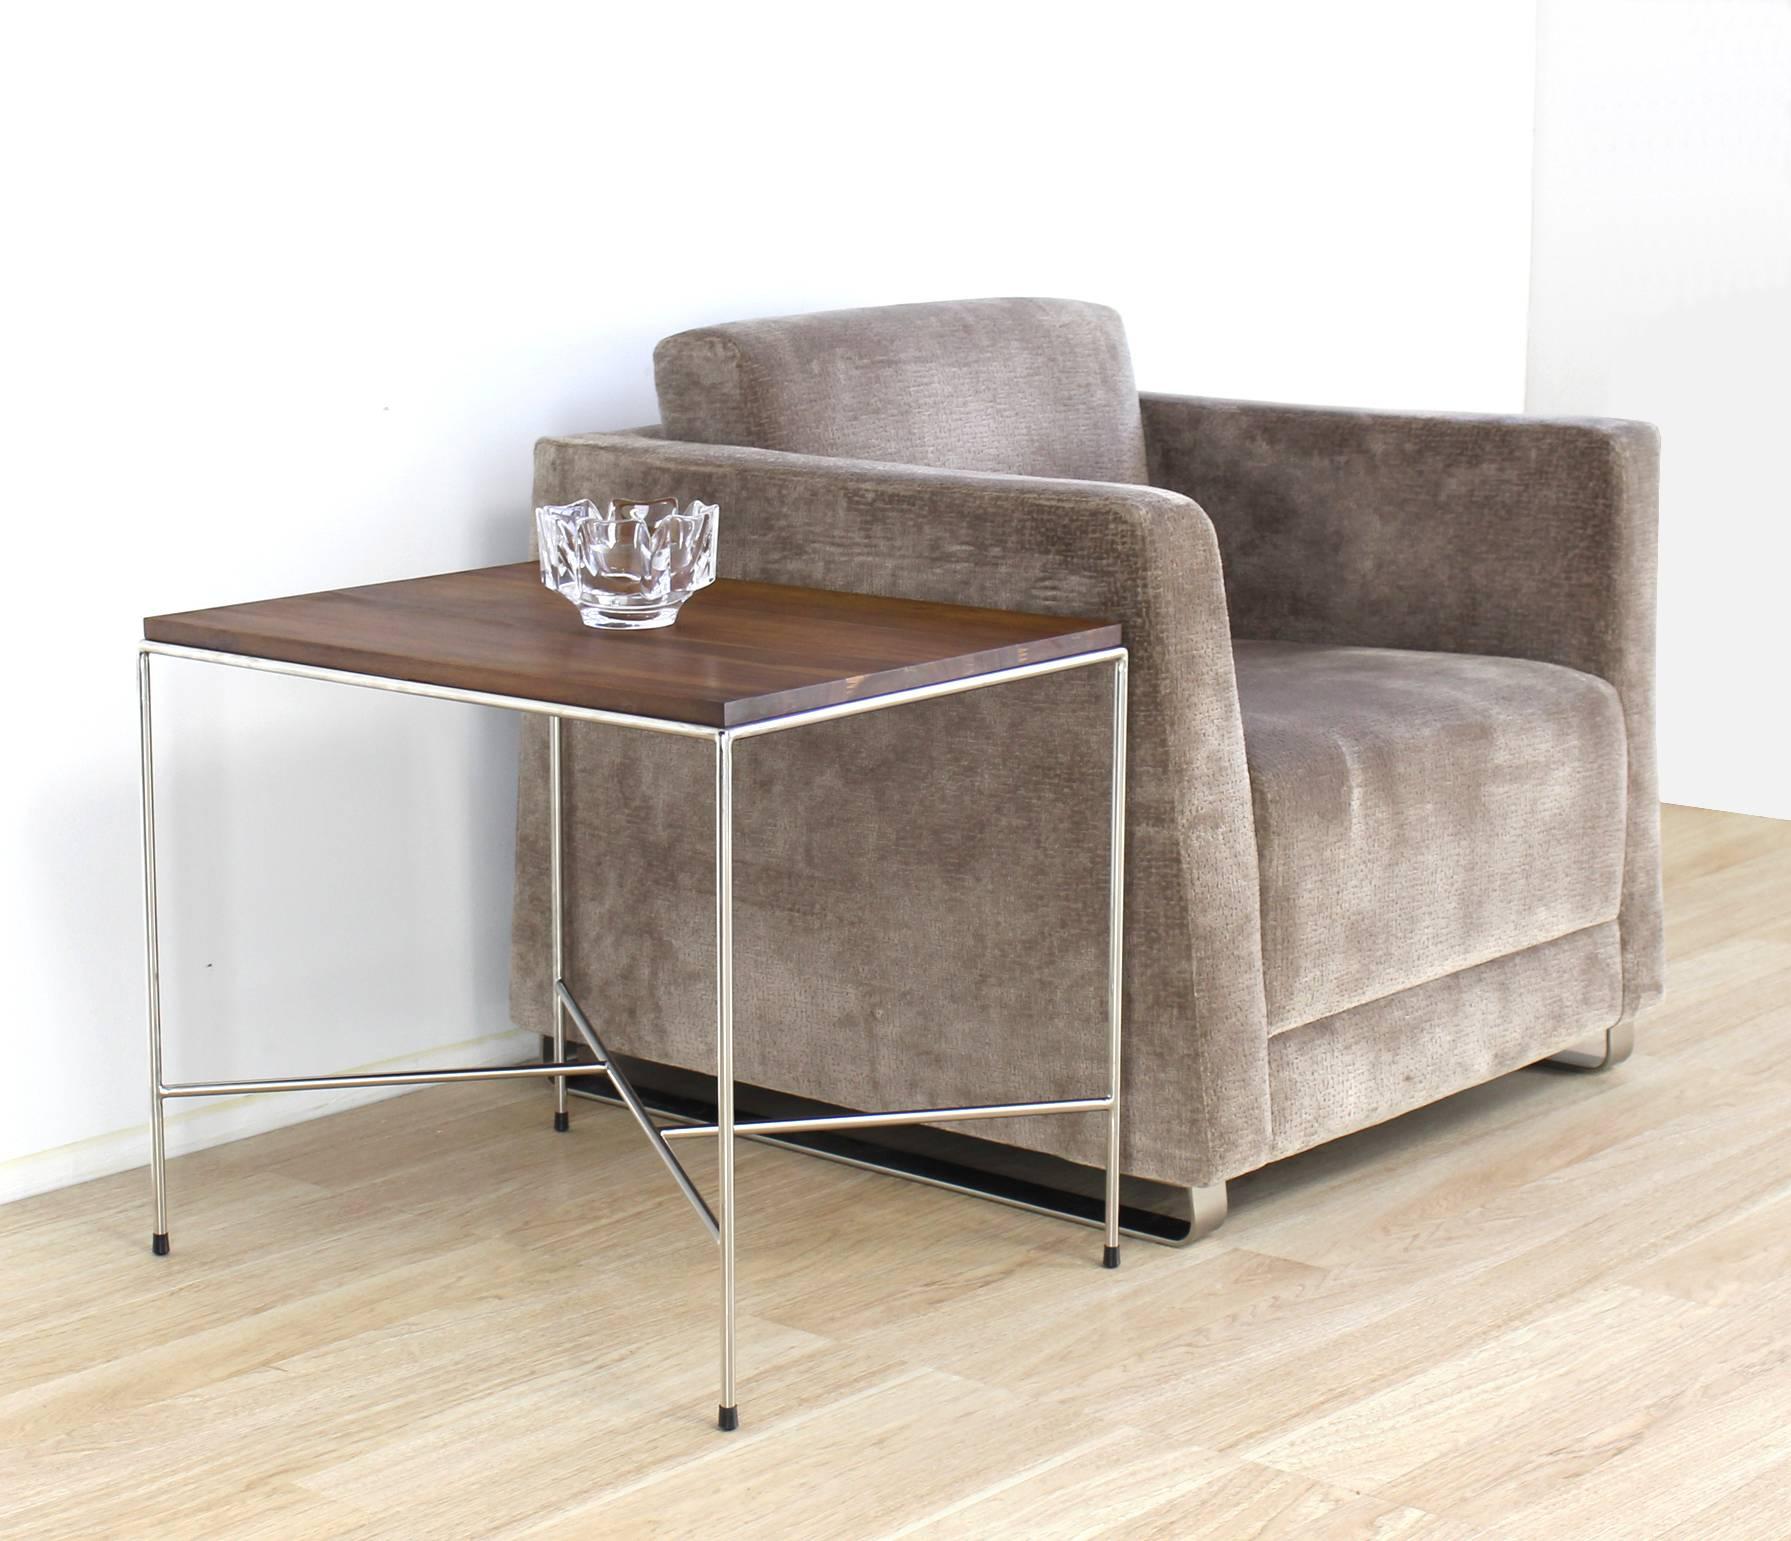 Moderner gepolsterter Lounge-Club-Sessel in Kastenform von Bernhardt.